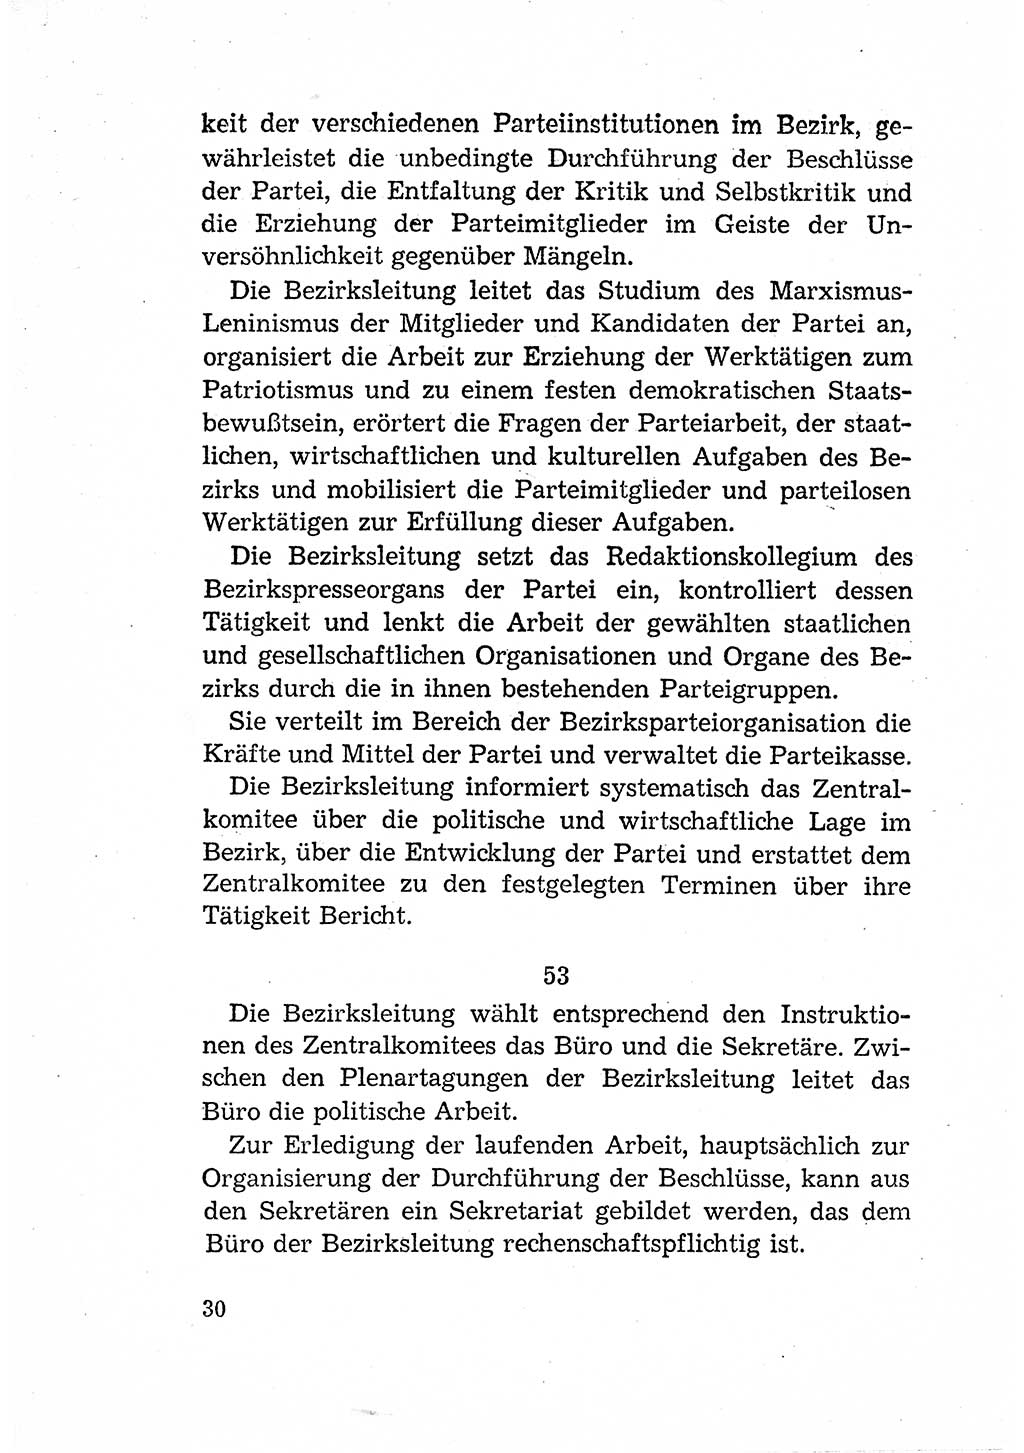 Statut der Sozialistischen Einheitspartei Deutschlands (SED) [Deutsche Demokratische Republik (DDR)] 1958, Seite 30 (St. SED DDR 1958, S. 30)